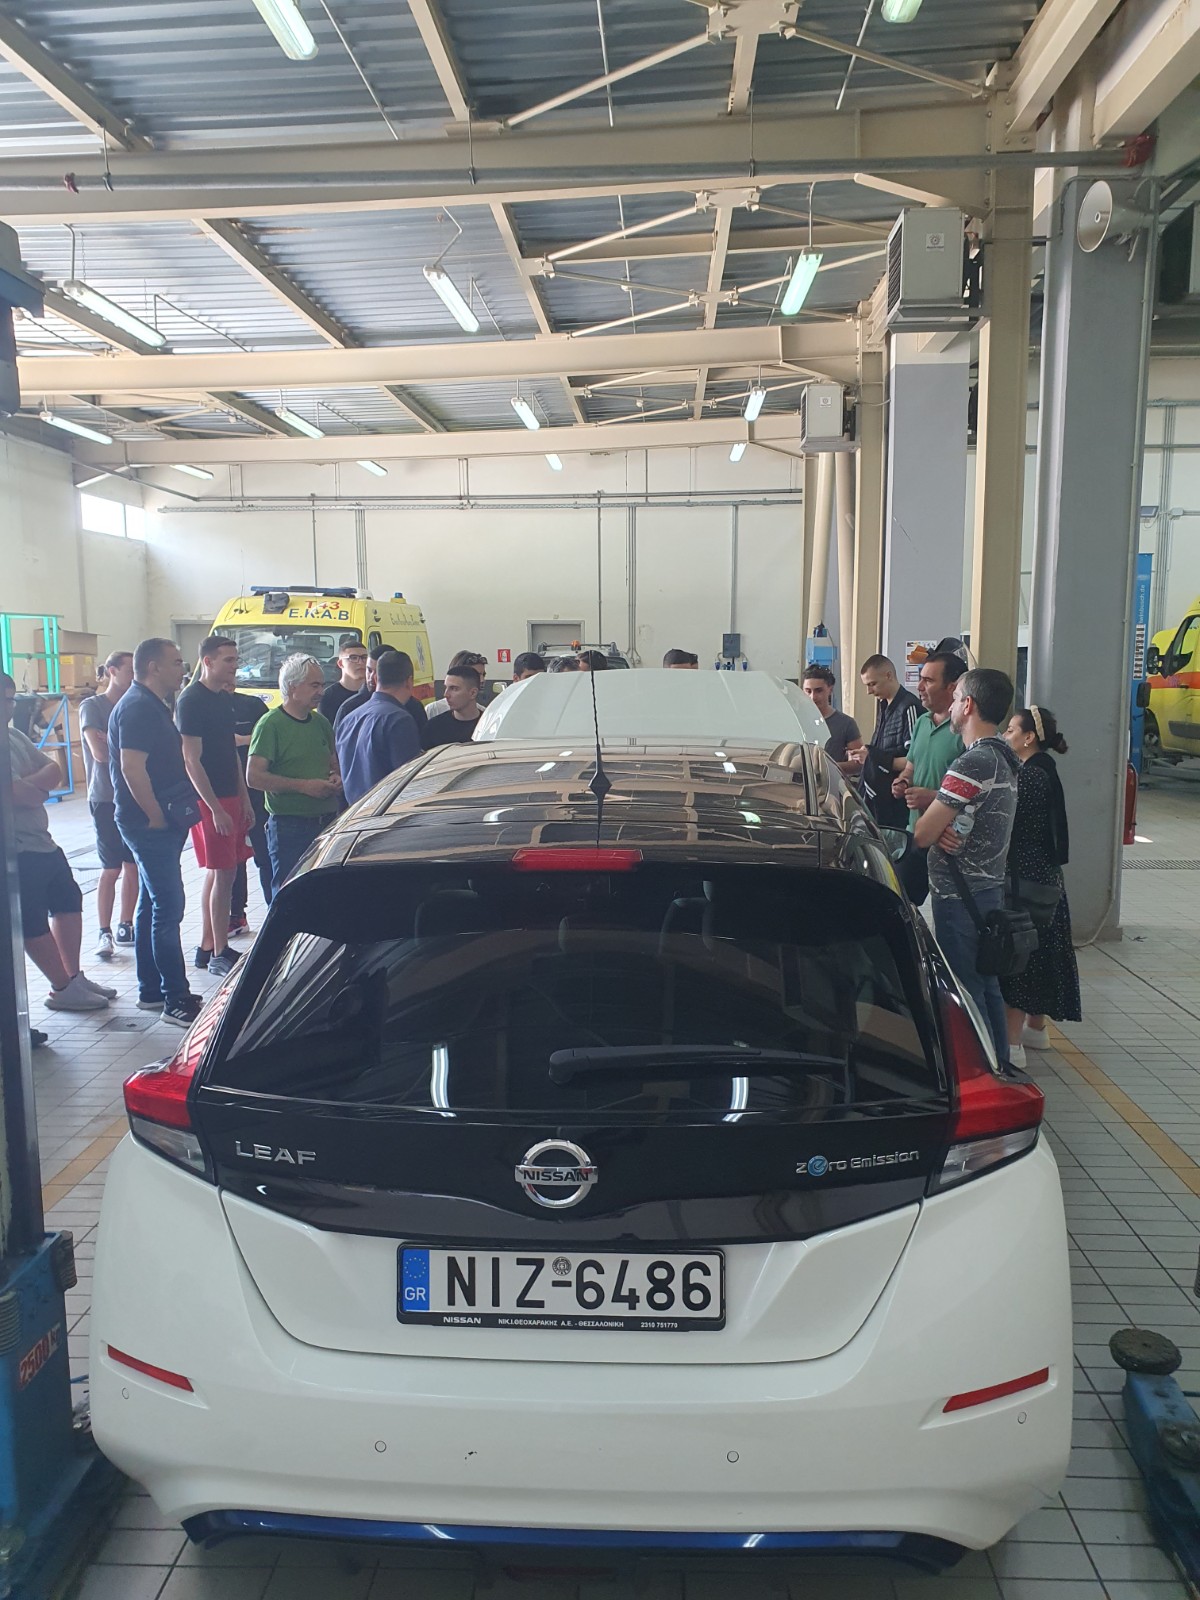 20230526 150903 Εκπαιδευτική επίσκεψη των σπουδαστών του ΙΕΚ Ευόσμου, στις εγκαταστάσεις της Nissan Θεοχαράκης στην Θεσσαλονίκη